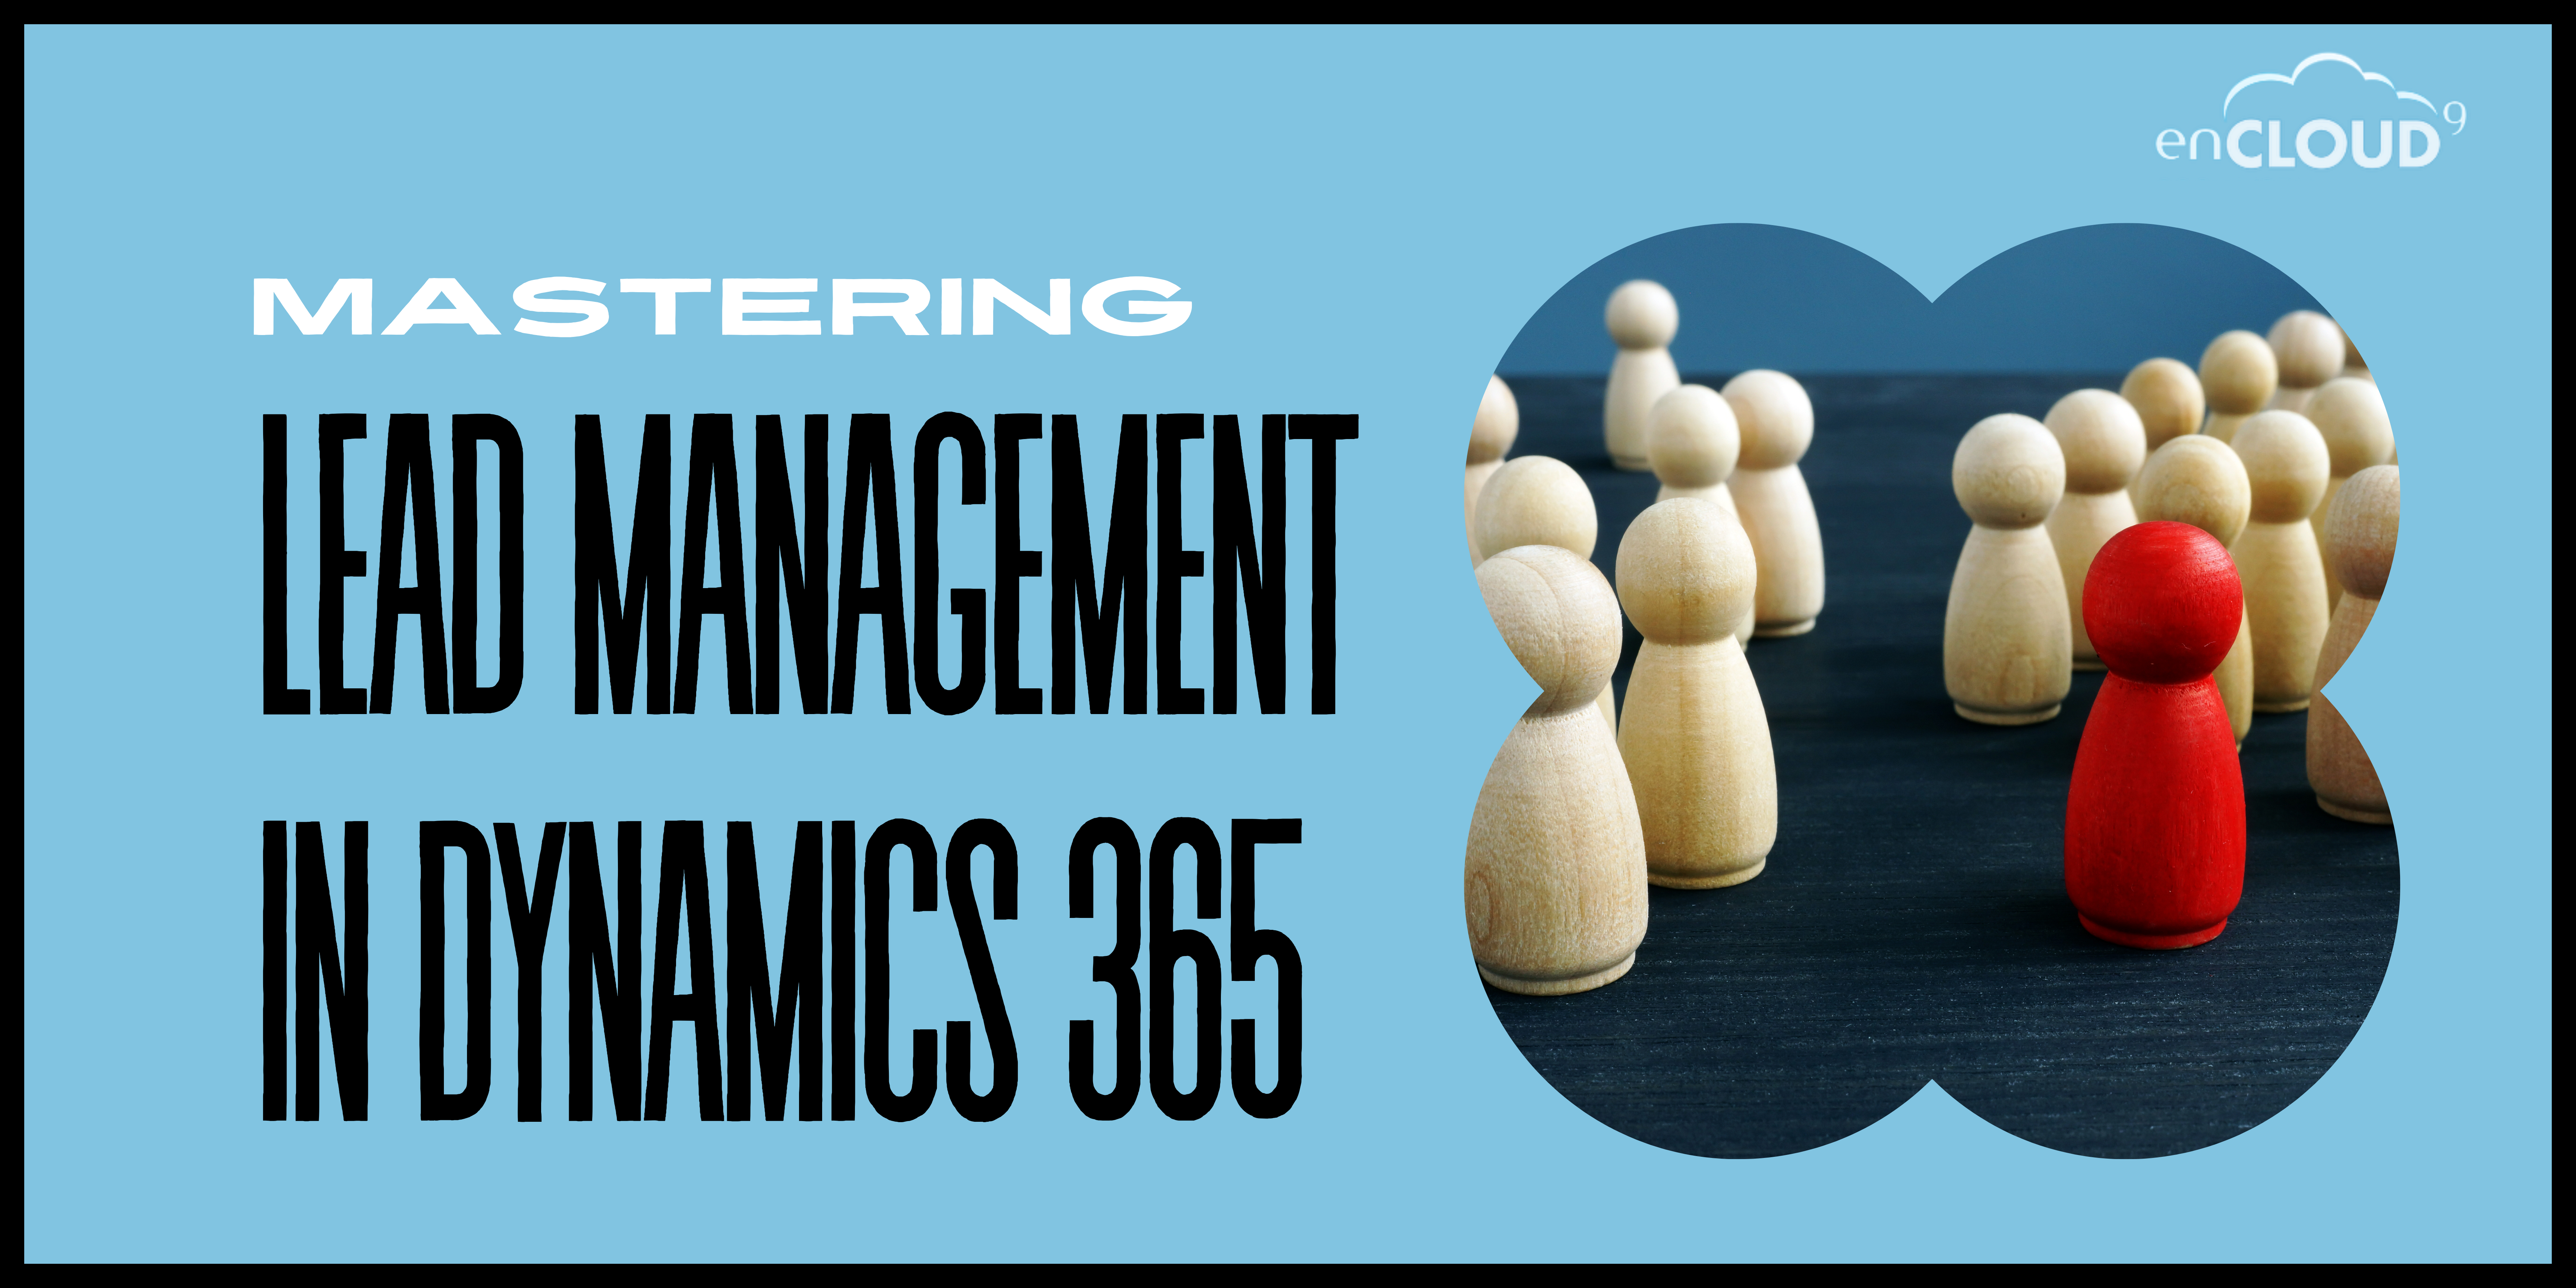 lead management | Dynamics 365 | enCloud9